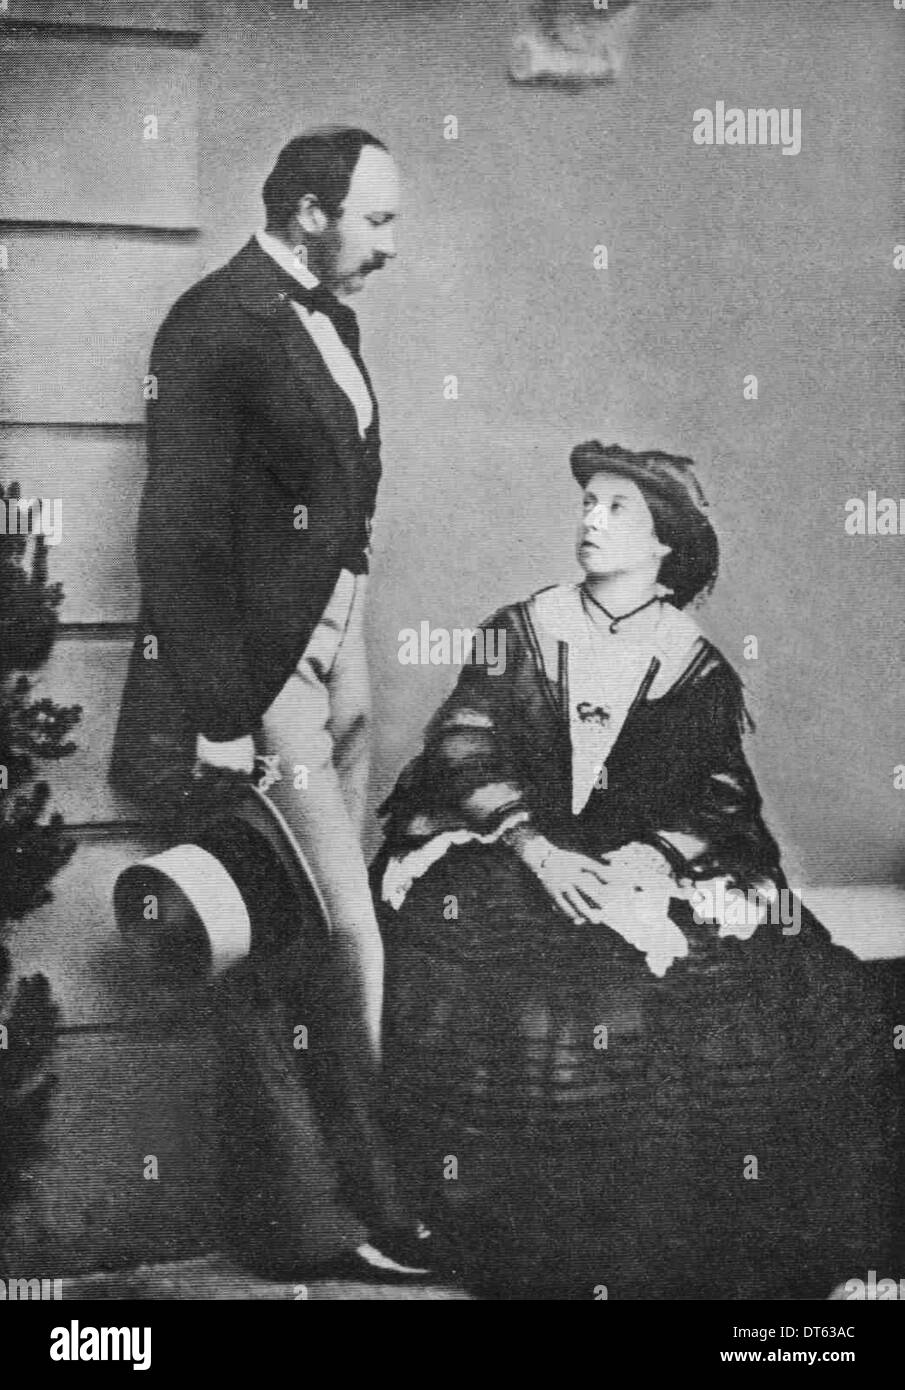 Príncipe Albert, esposo y consorte de la Reina Victoria en 1860. A partir de los archivos de prensa Servicio de retrato (vertical) Servicio de Prensa anteriormente. Foto de stock